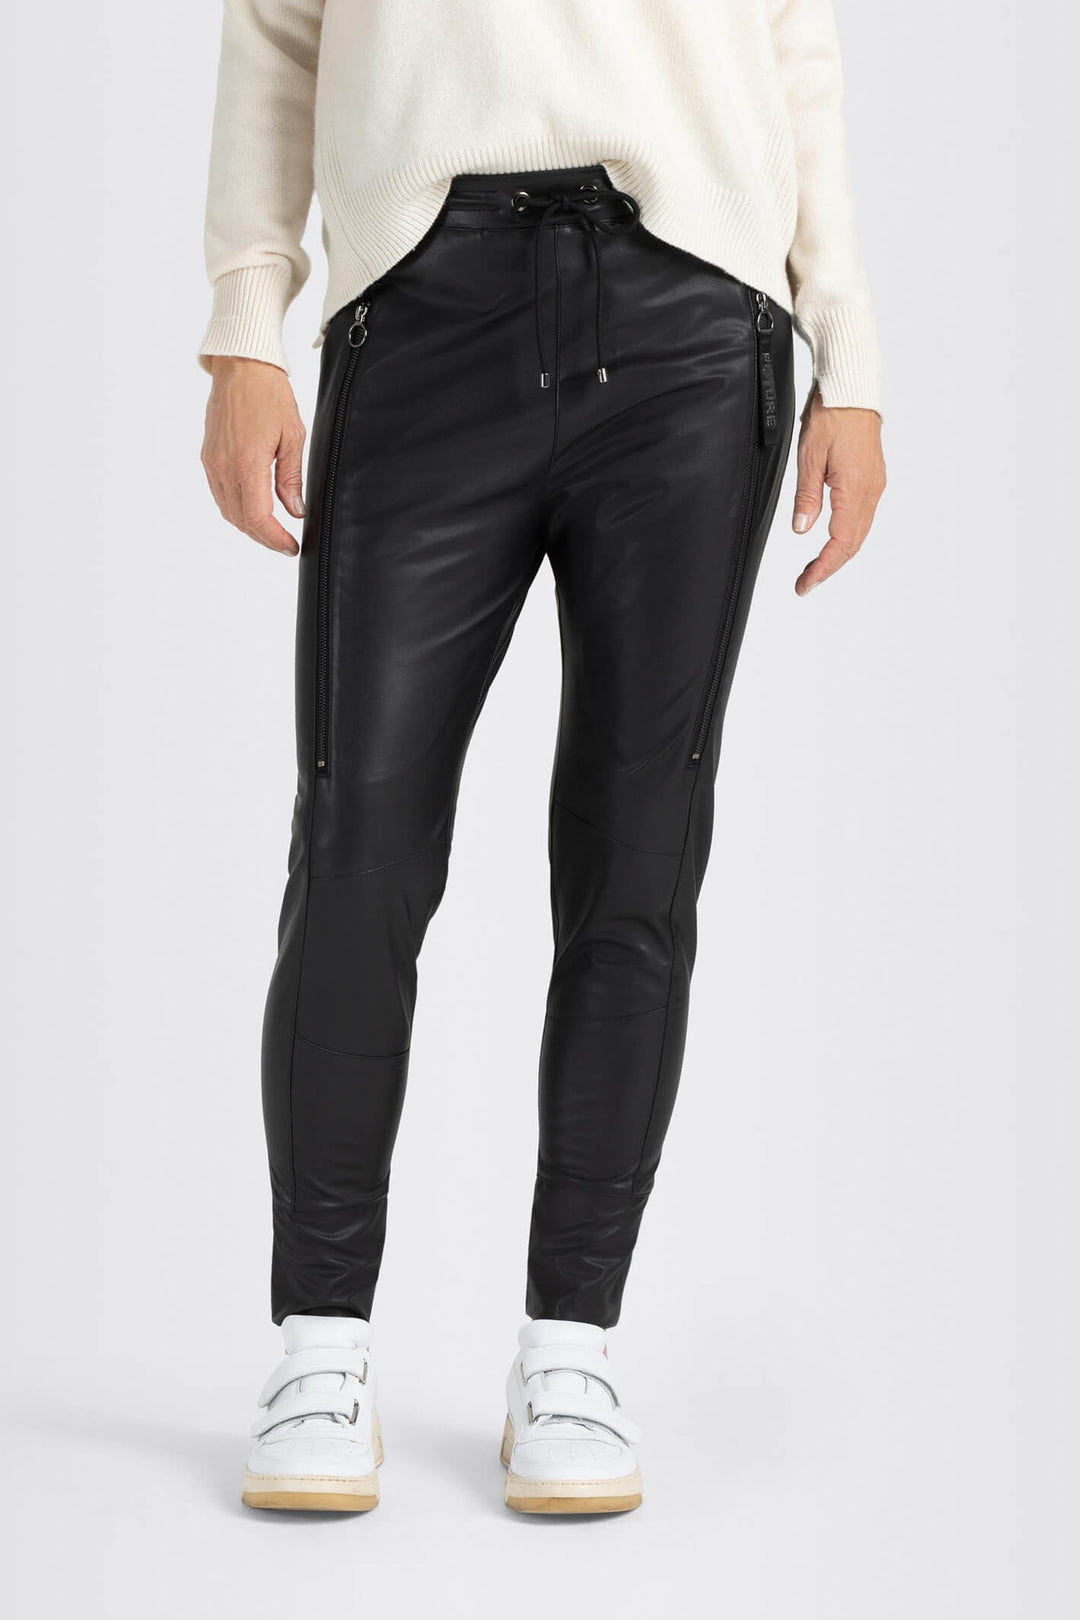 MAC 2742-00-0498L Future Black Light Vegan Leather Slip-On Trousers - Olivia Grace Fashion